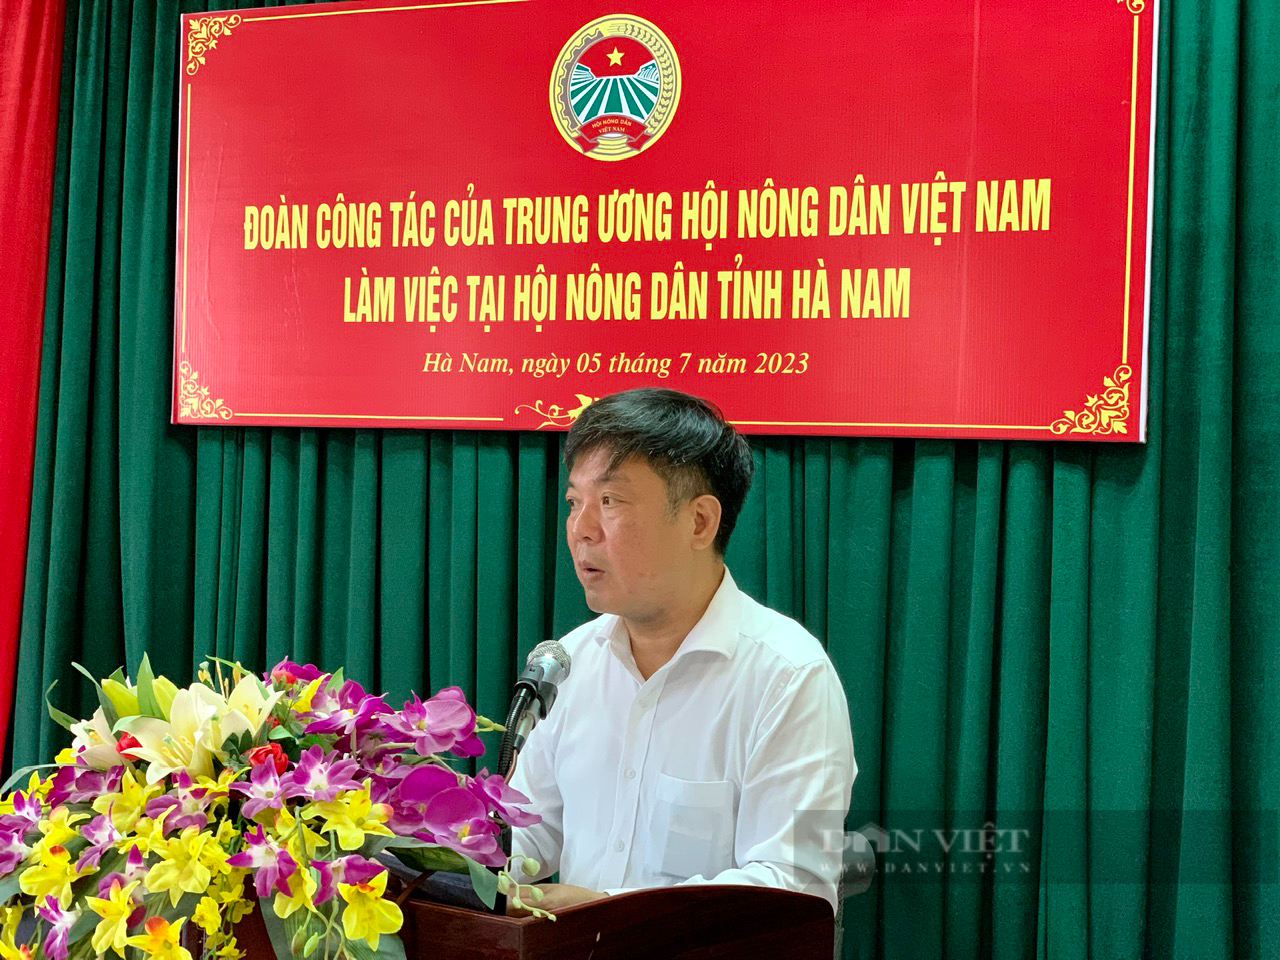 Đoàn công tác Trung ương Hội Nông dân Việt Nam làm việc với Hội Nông dân tỉnh Hà Nam - Ảnh 2.